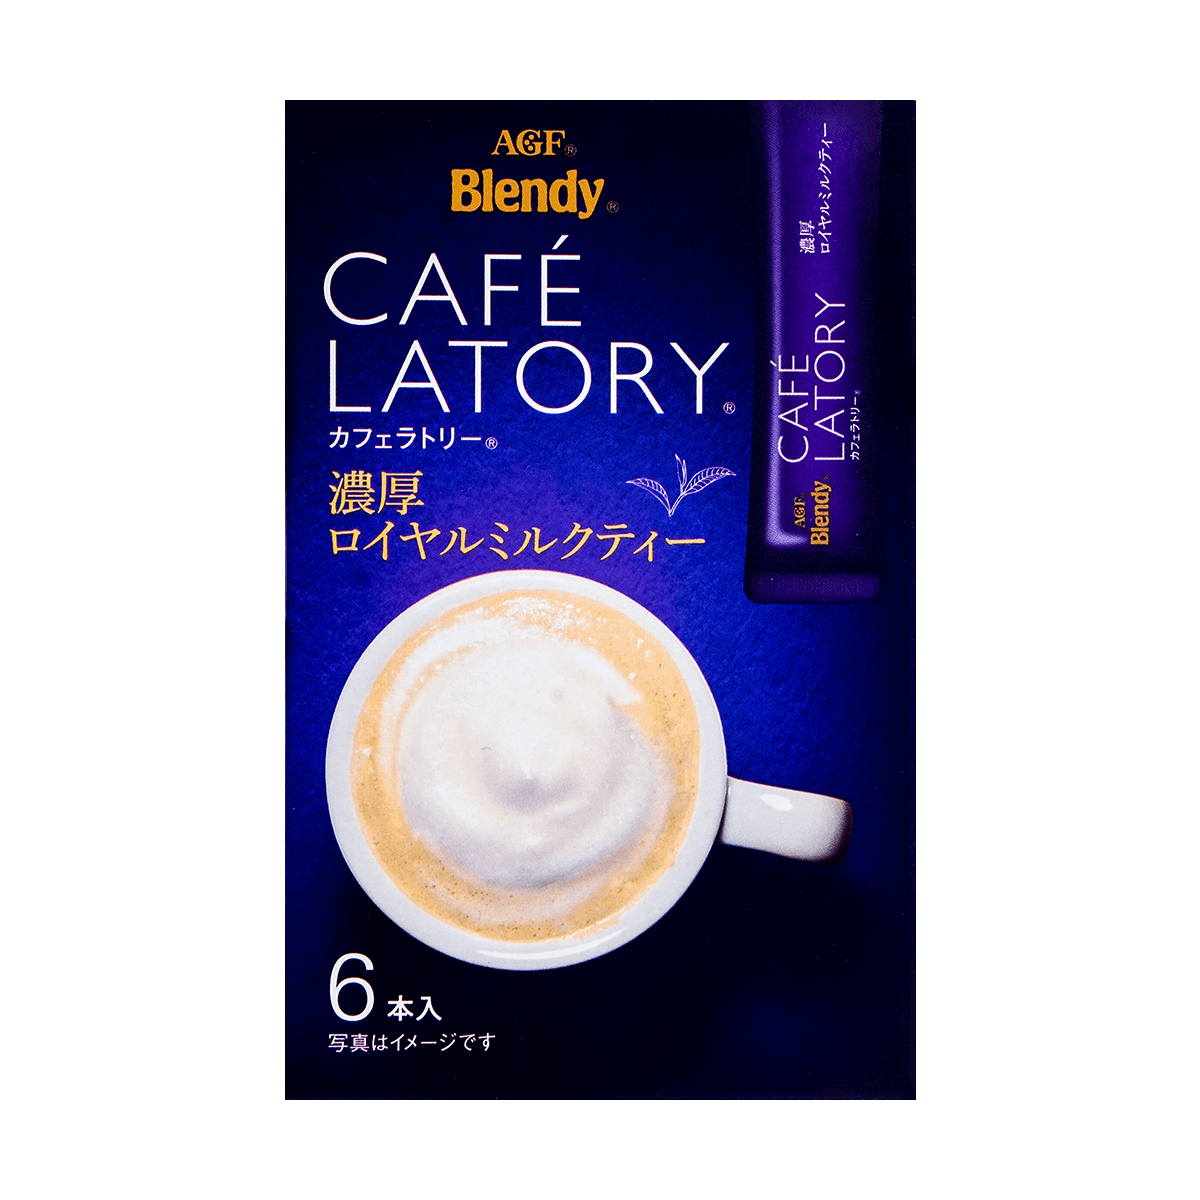 日本AGF 浓香皇家咖啡奶茶 6包入 怎么样 - 亚米网